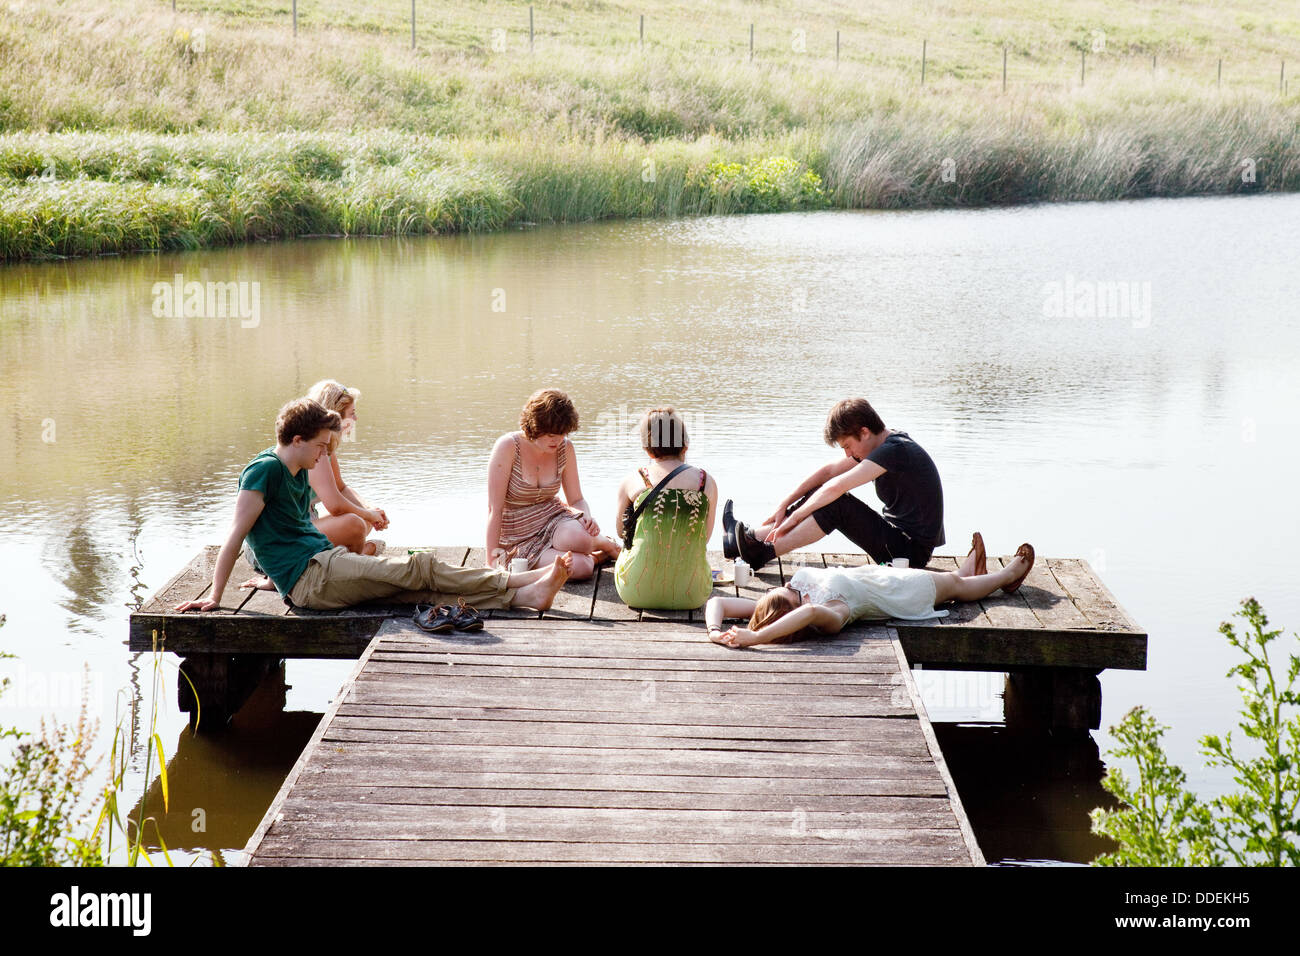 Summer People UK; un grupo de adolescentes sentados en un embarcadero junto a un lago en verano, Lambourn, Berkshire England UK Foto de stock